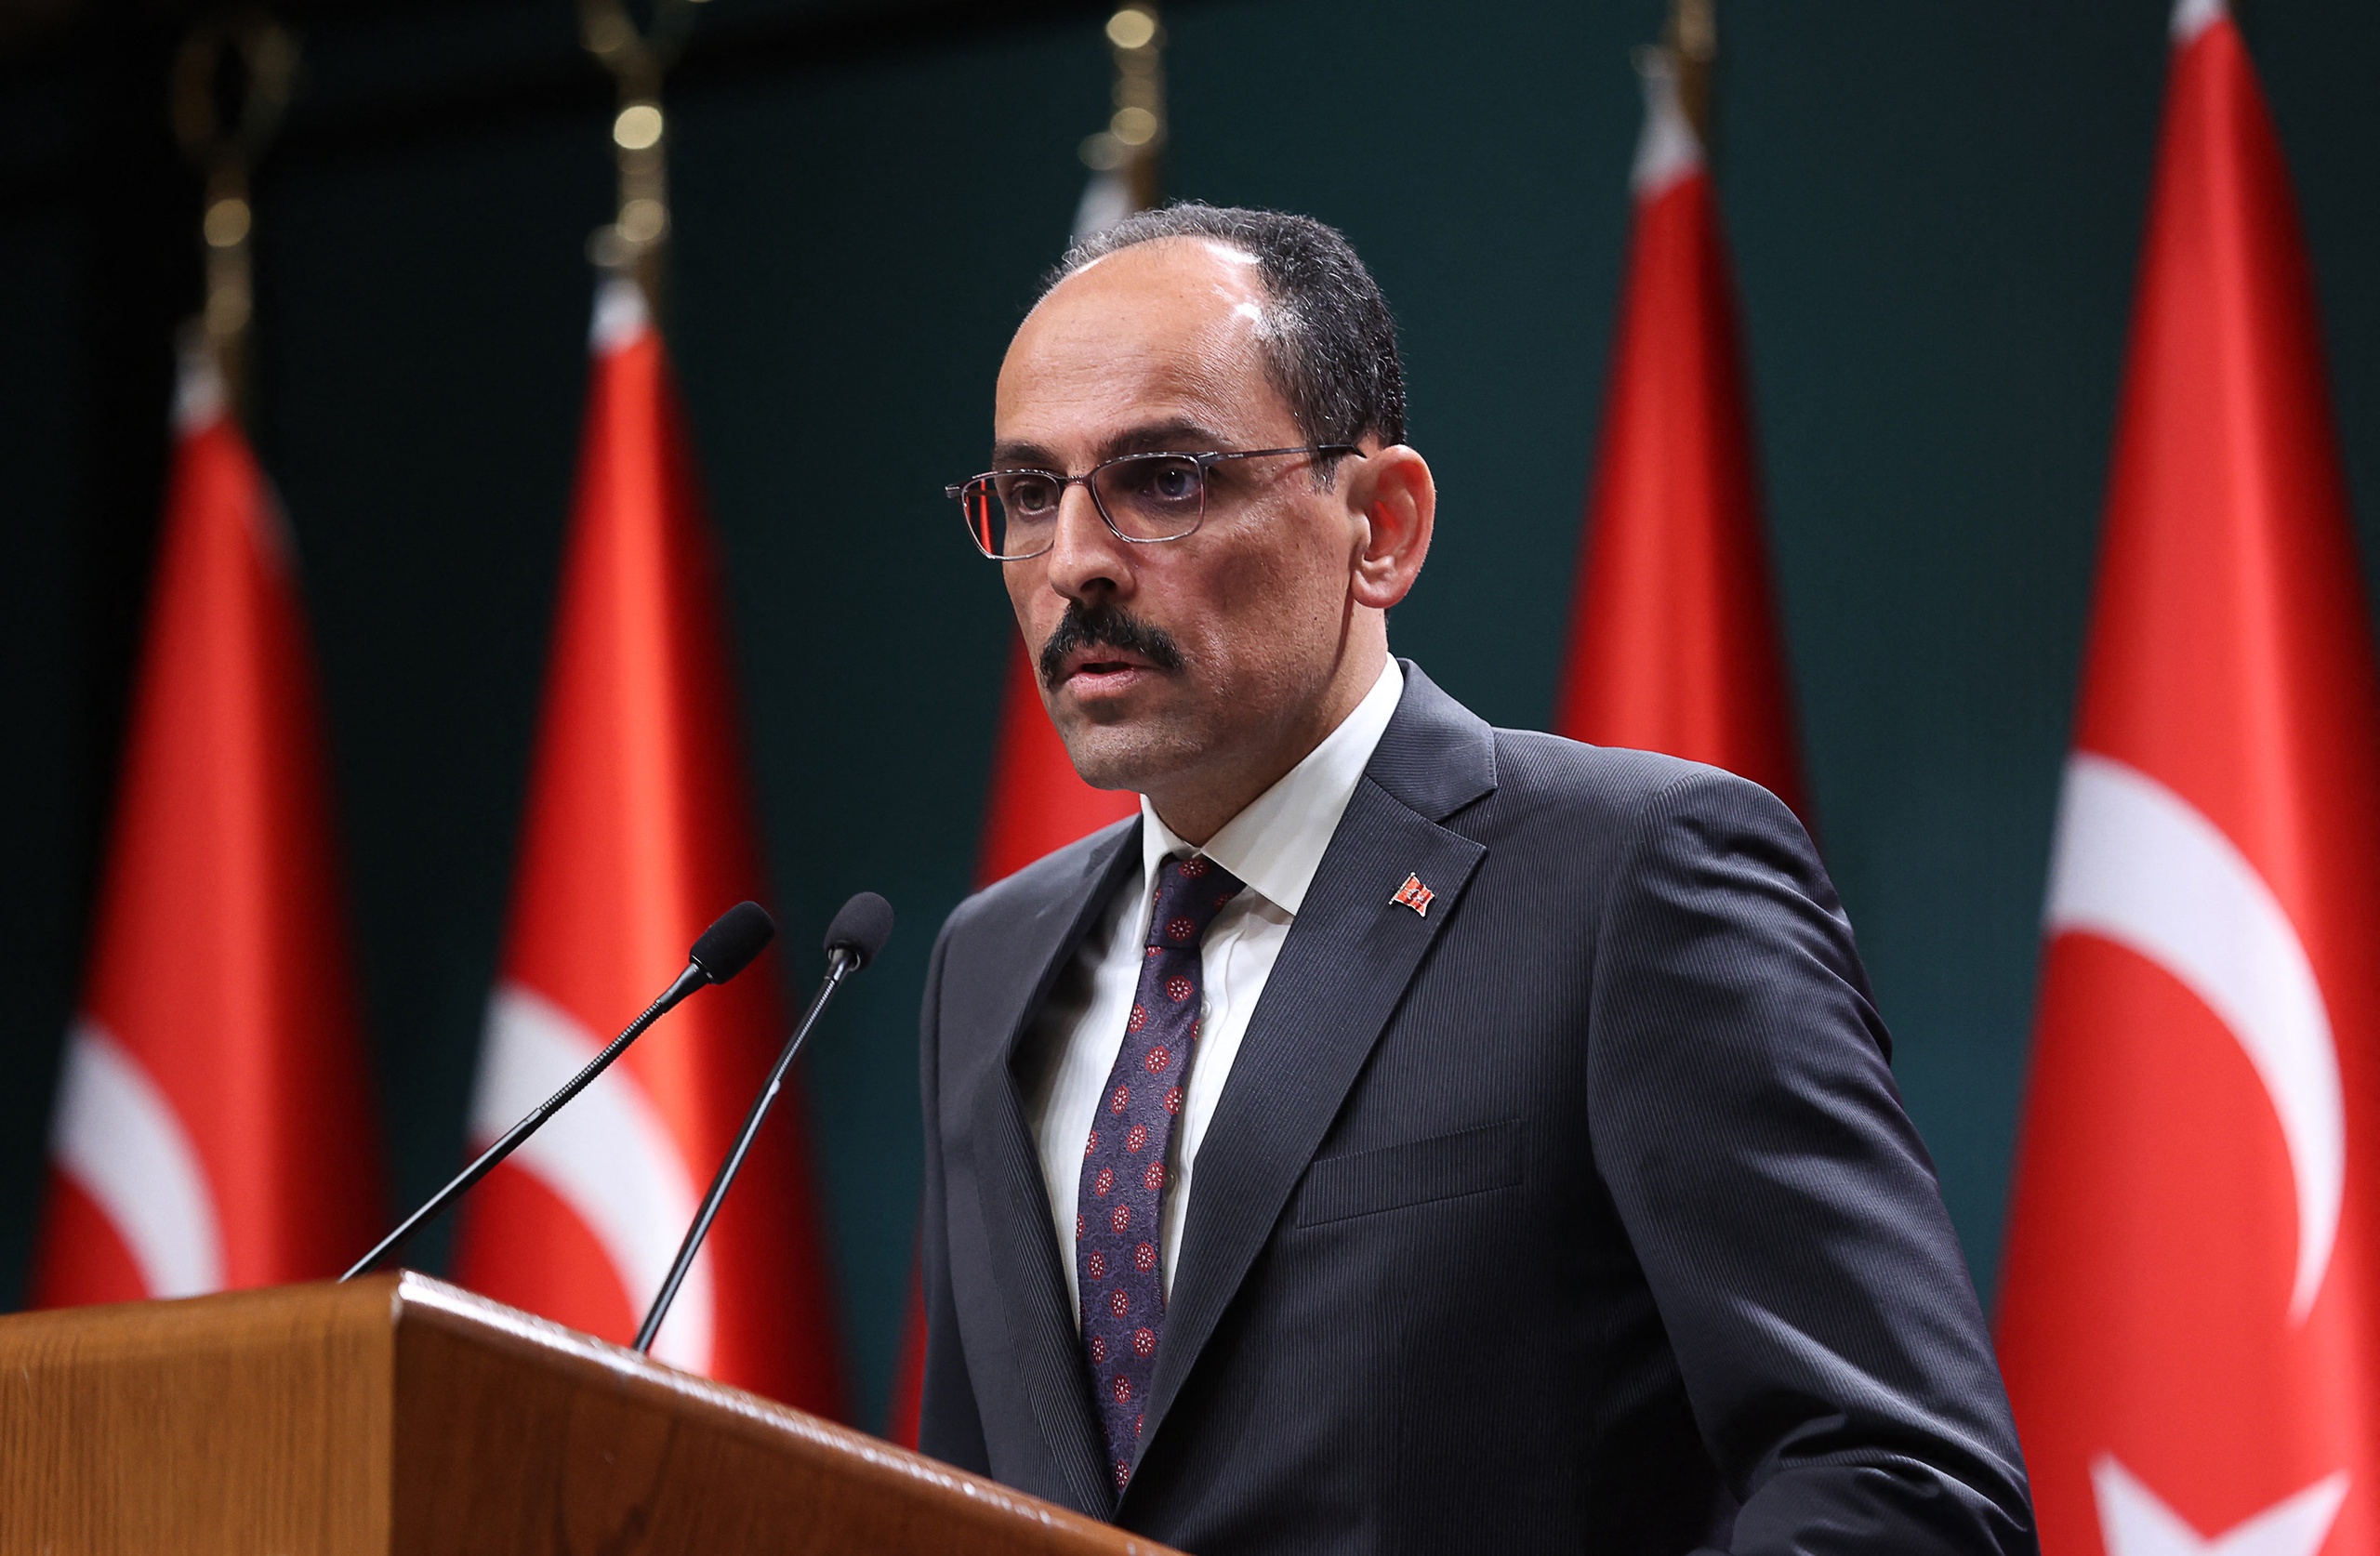 De Turkse presidentiële woordvoerder Ibrahim Kalin geeft een persconferentie na gesprekken met Zweden en Finland over hun biedingen om lid te worden van de NAVO in het presidentieel complex in Ankara, op 25 mei 2022.